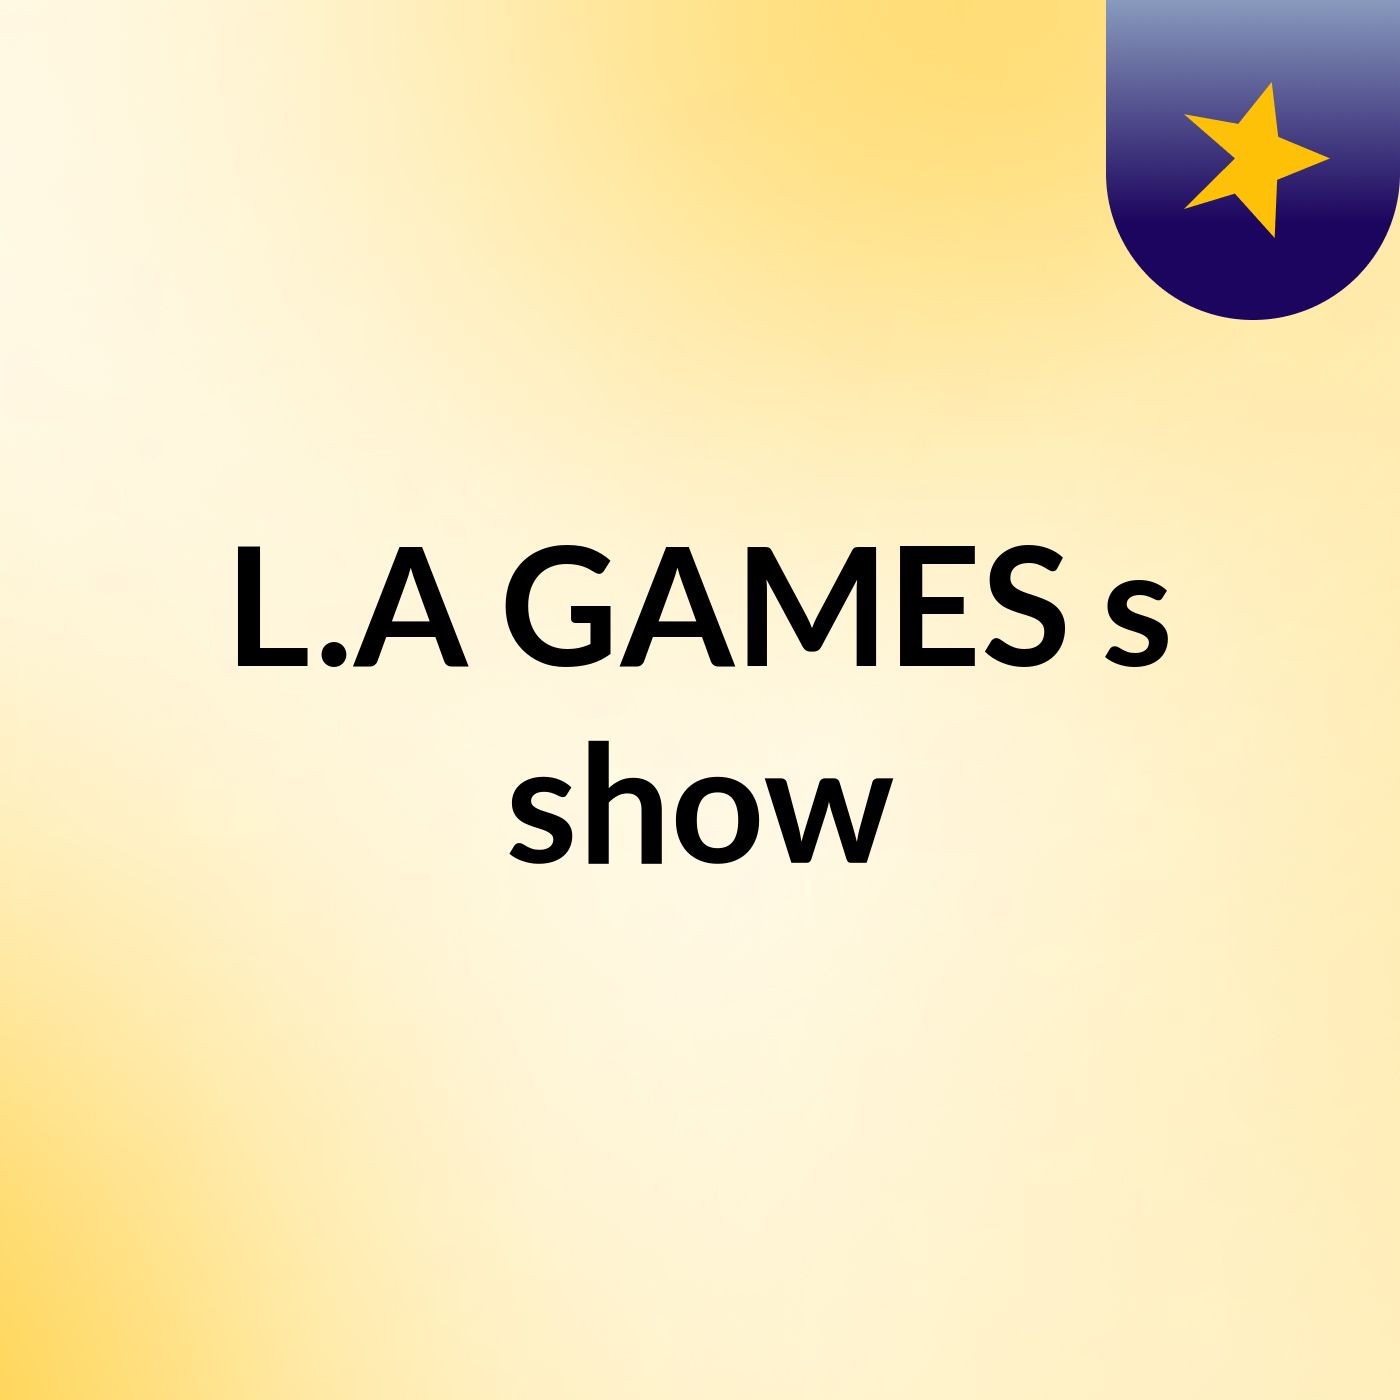 L.A GAMES's show